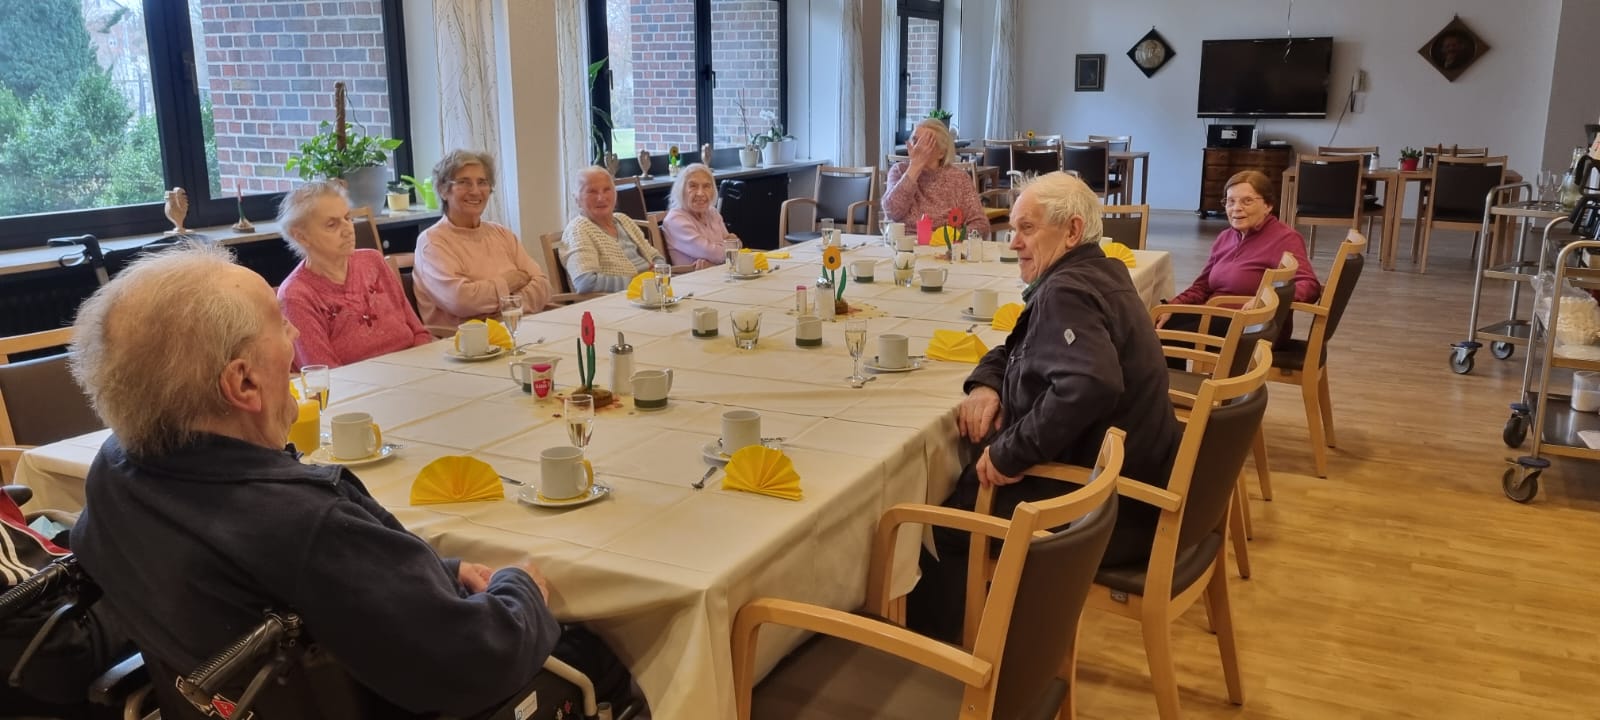 Die Seniorinnen und Senioren gemeinsam am festlich gedeckten Kaffeetisch im Altenheim, während sie fröhlich auf die Geburtstagstorten warten.